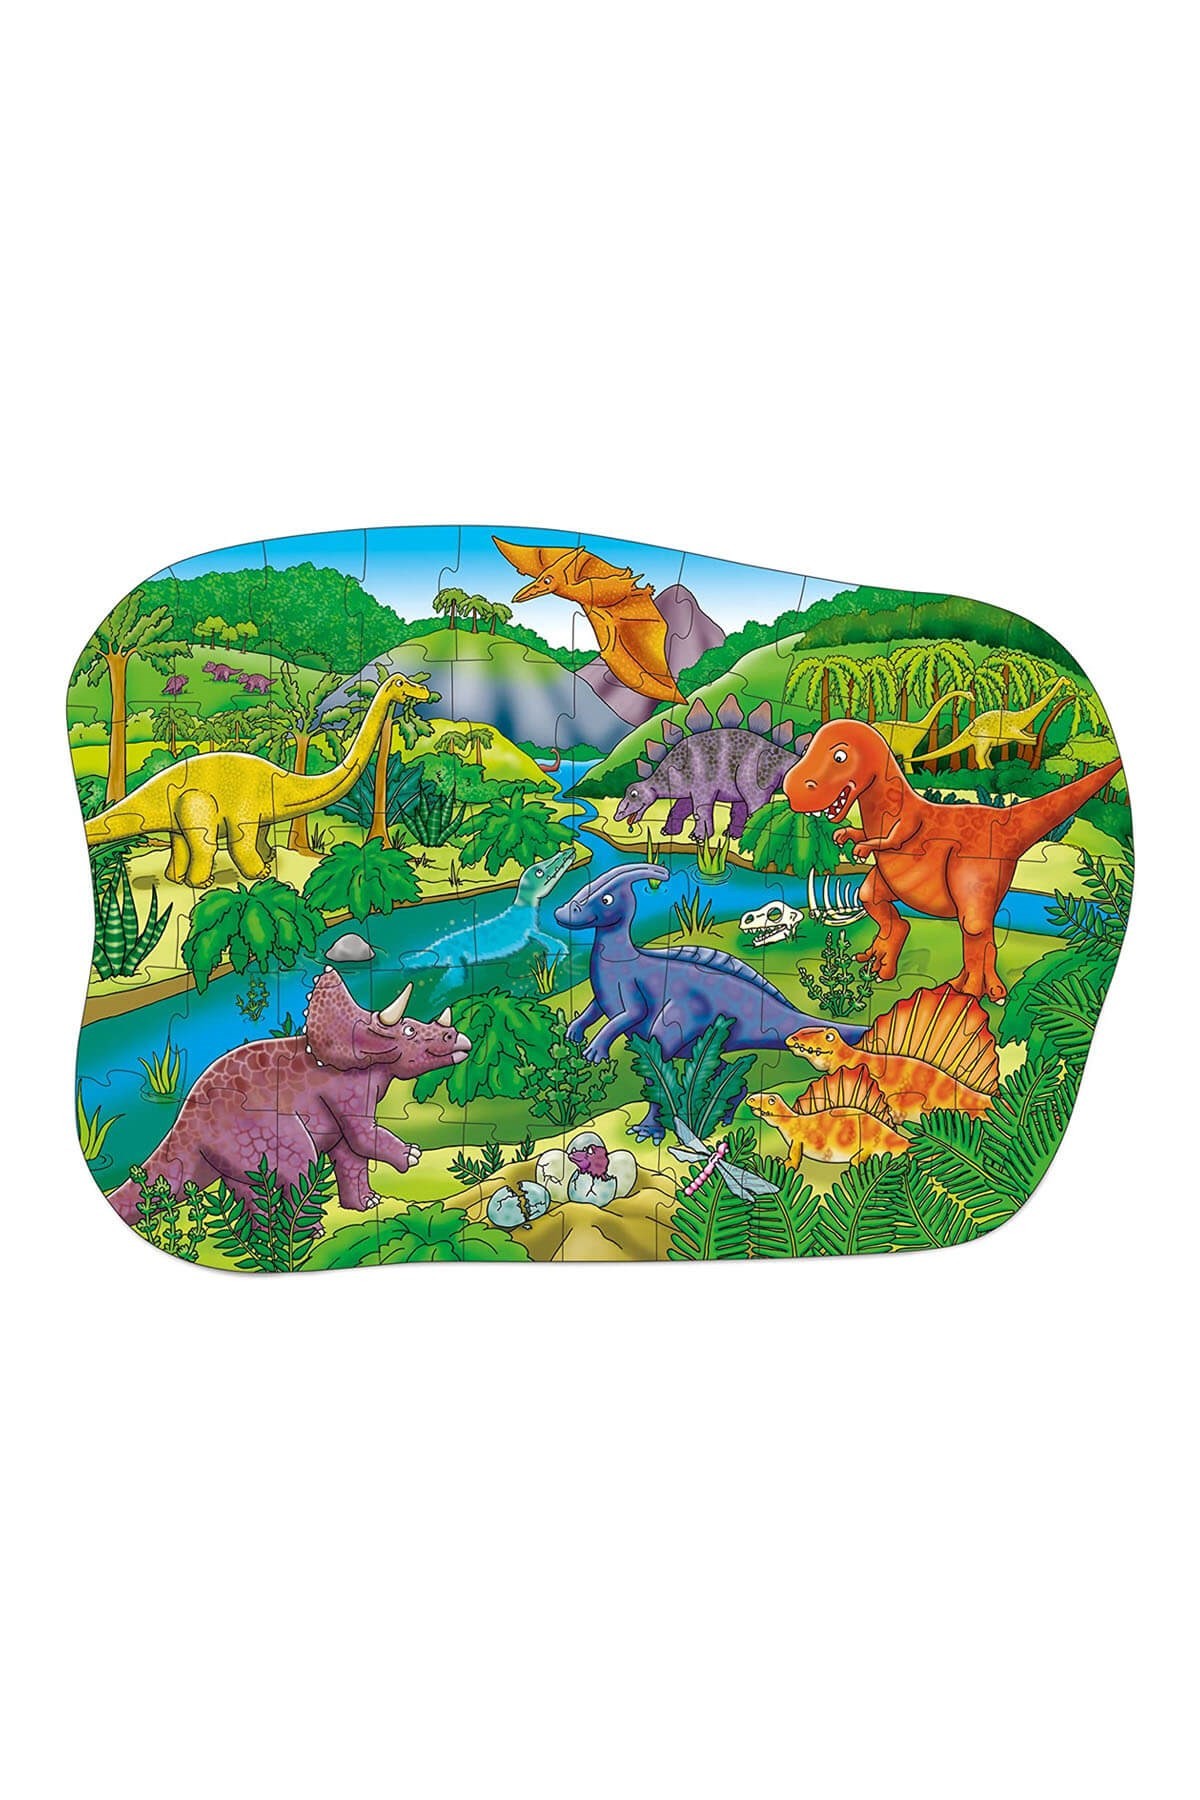 Orchard Büyük Dinozorlar Puzzle